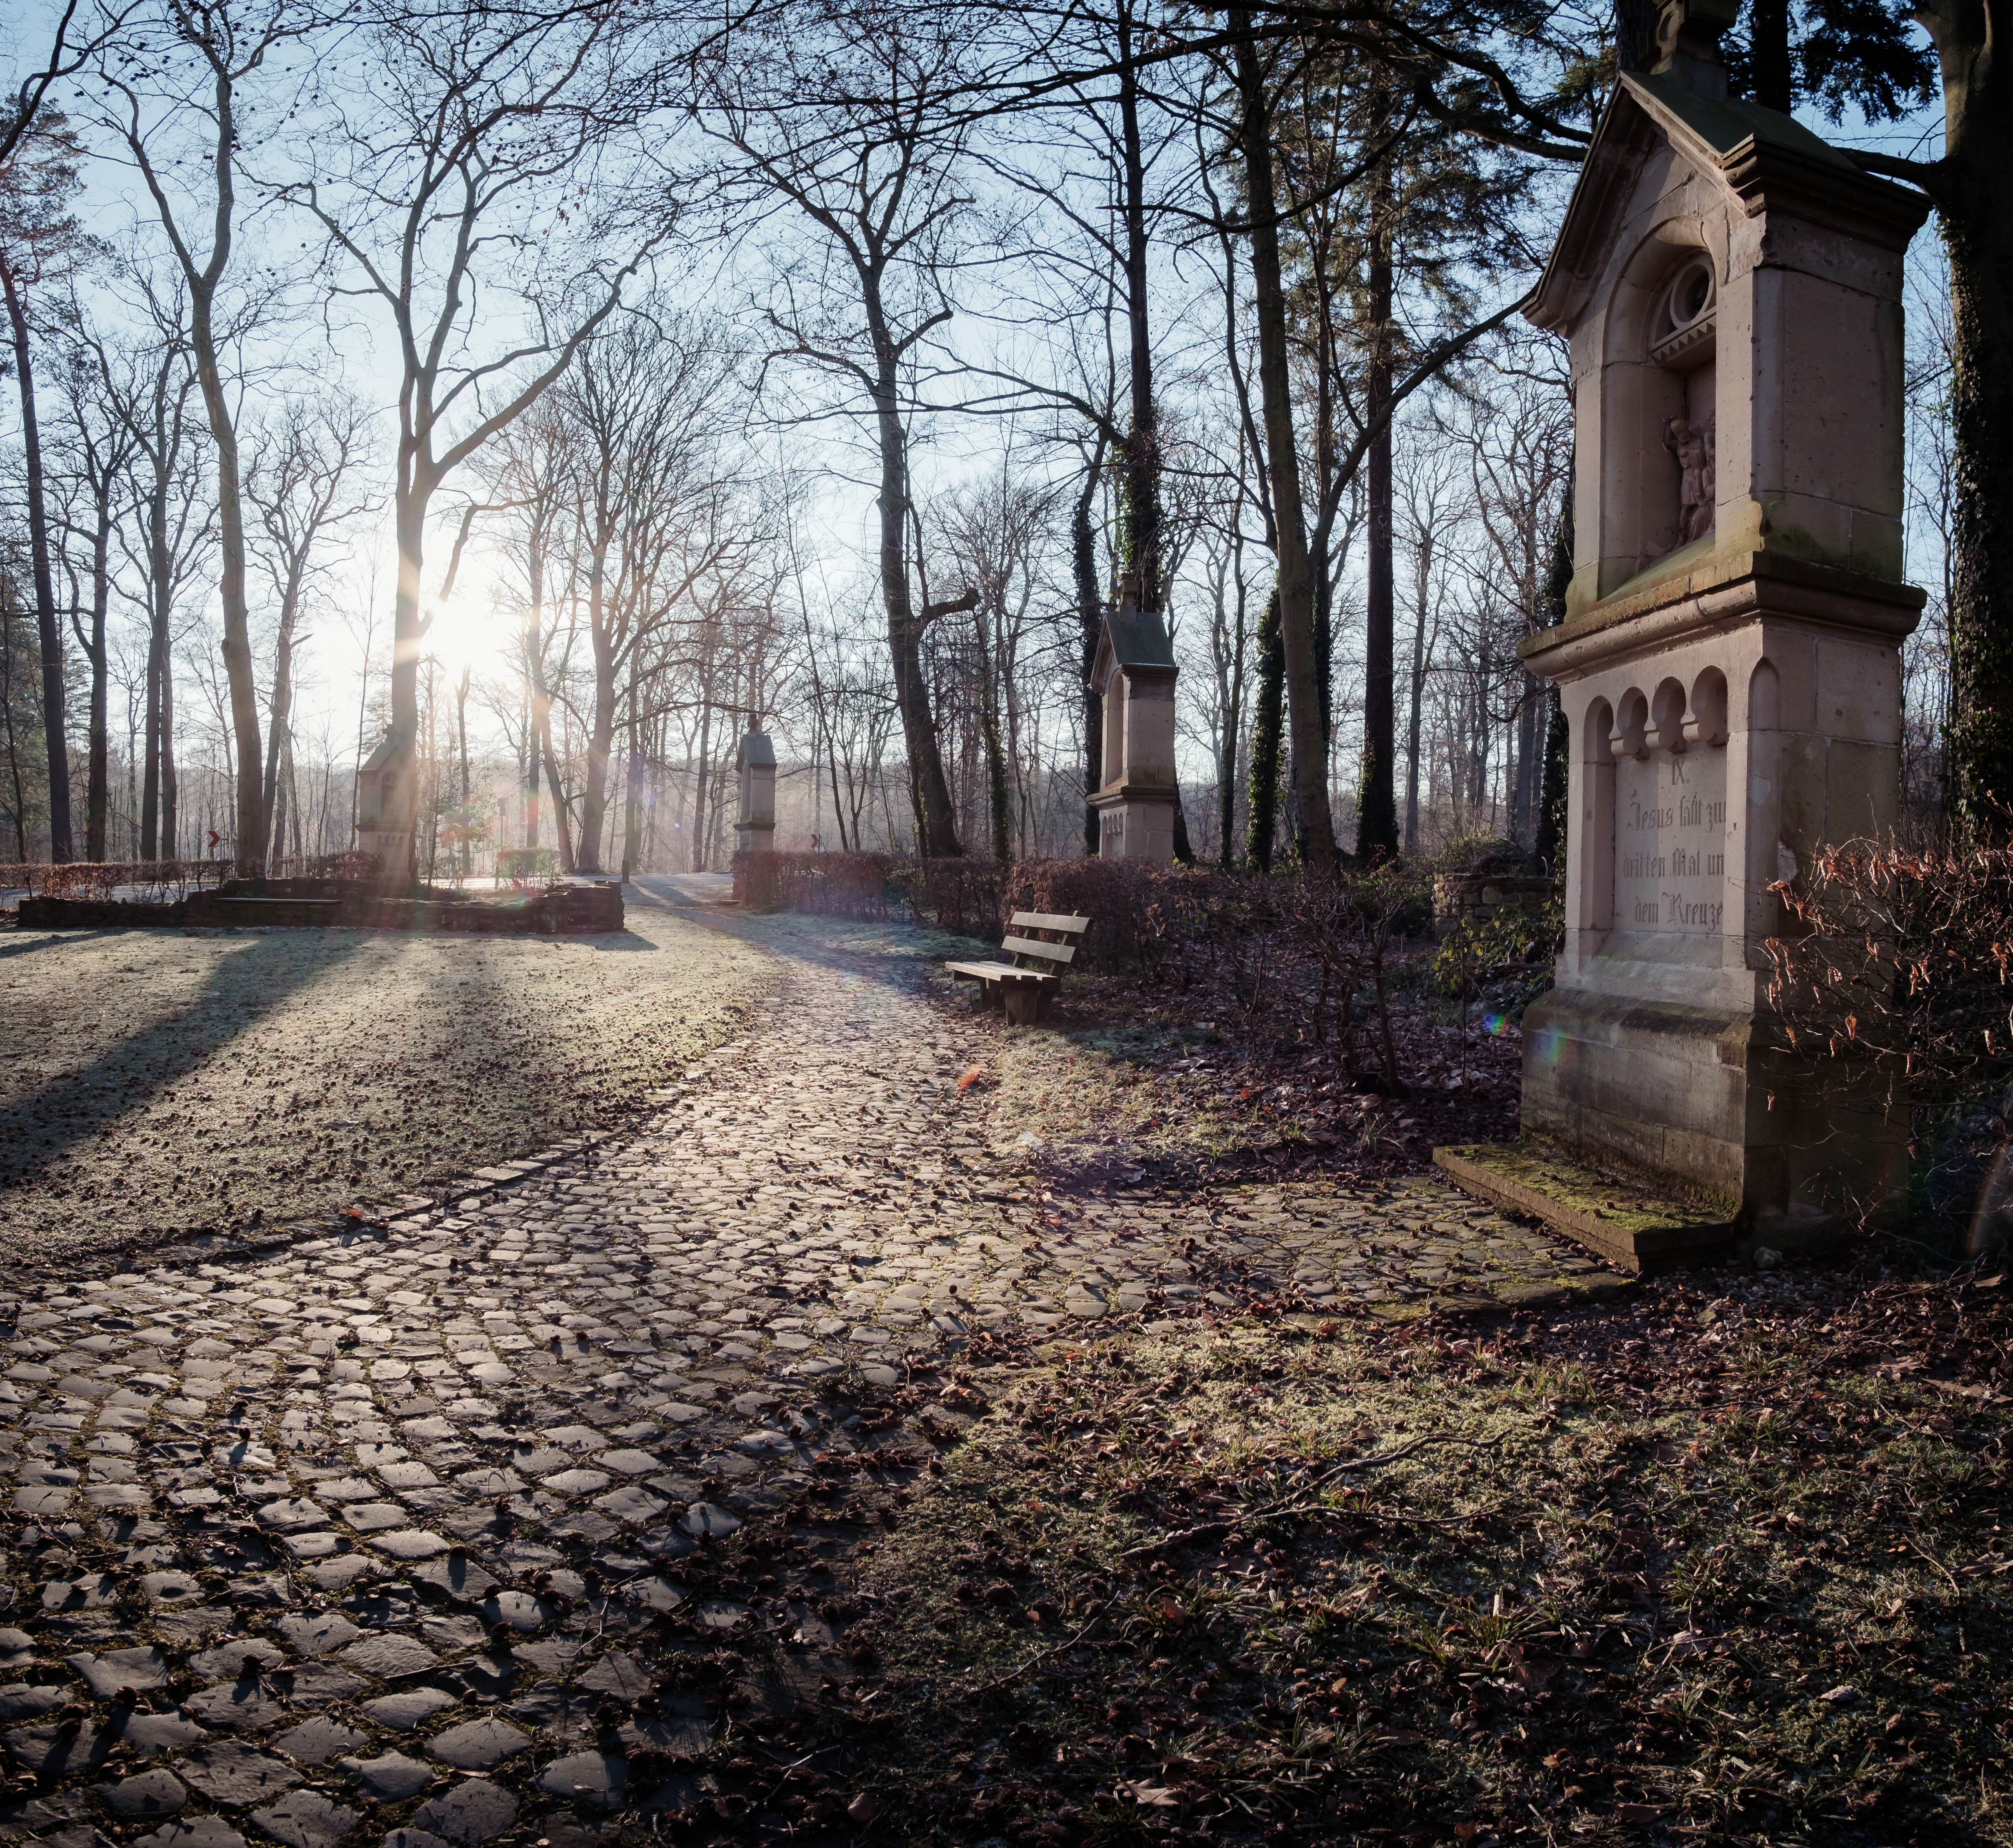 Gräber auf einem Friedhof